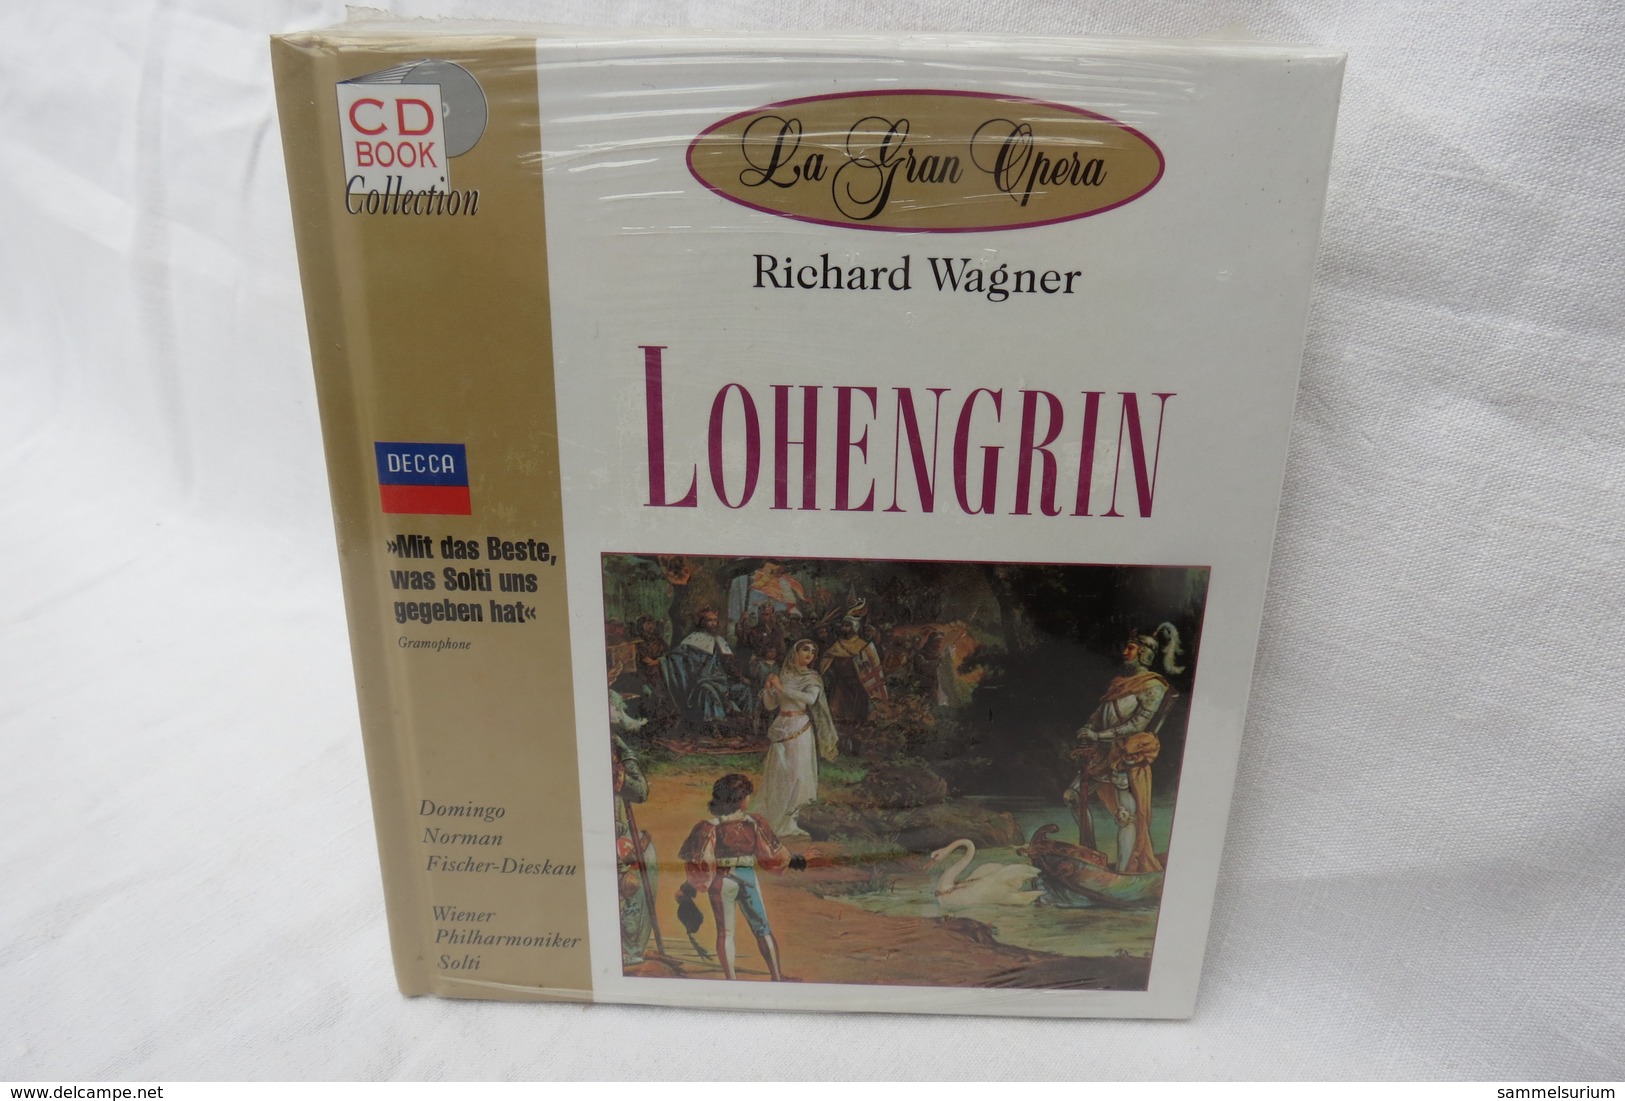 CD "Lohengrin / Richard Wagner" Mit Buch Aus Der CD Book Collection (ungeöffnet, Original Eingeschweißt) - Opera